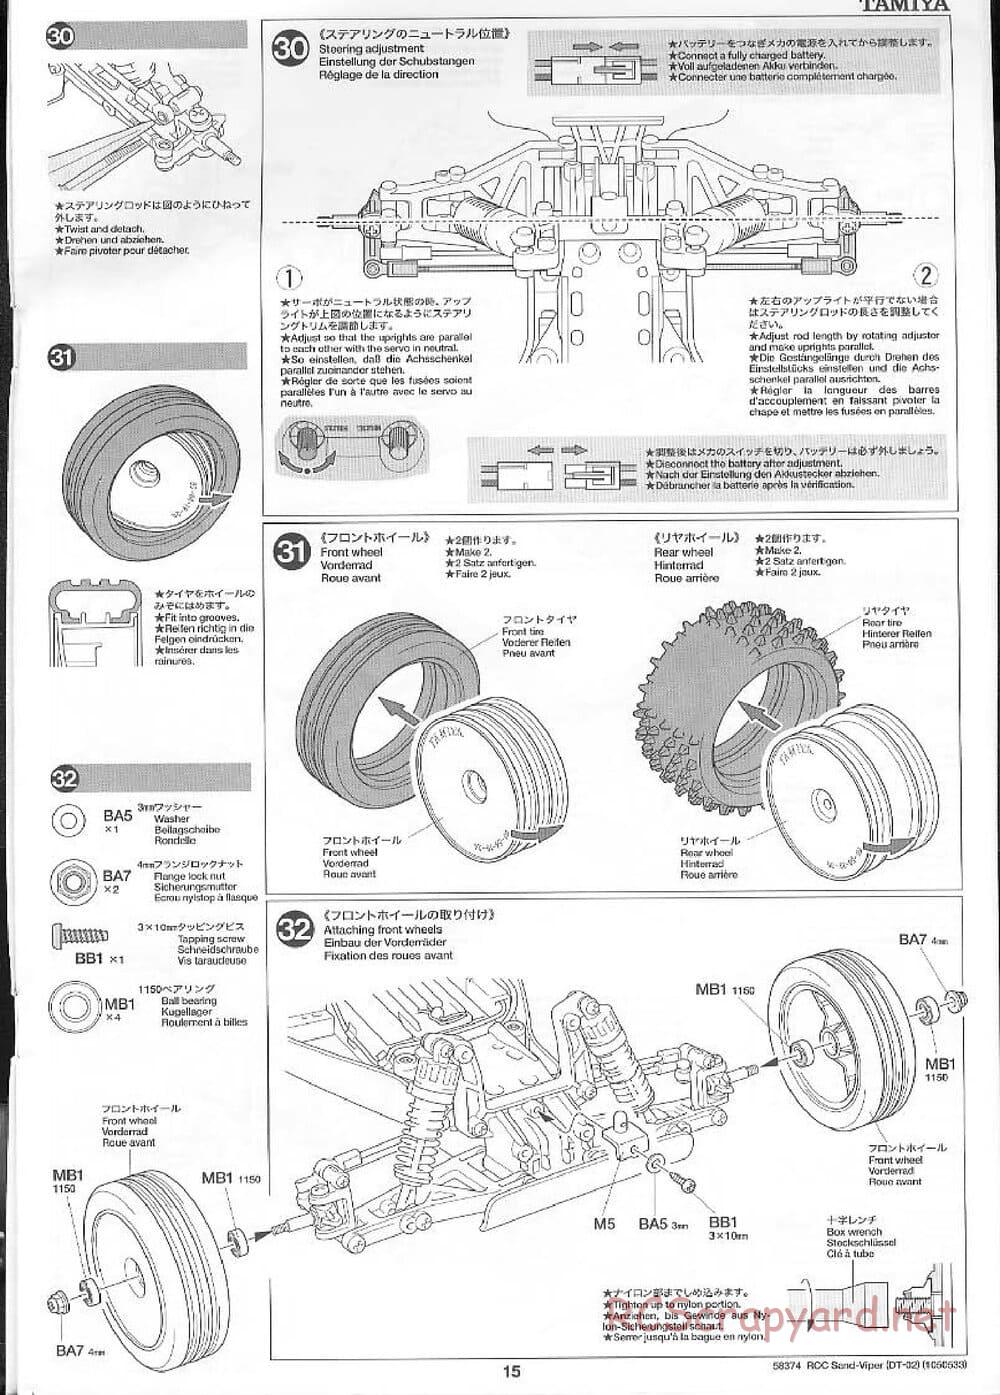 Tamiya - Sand Viper Chassis - Manual - Page 15